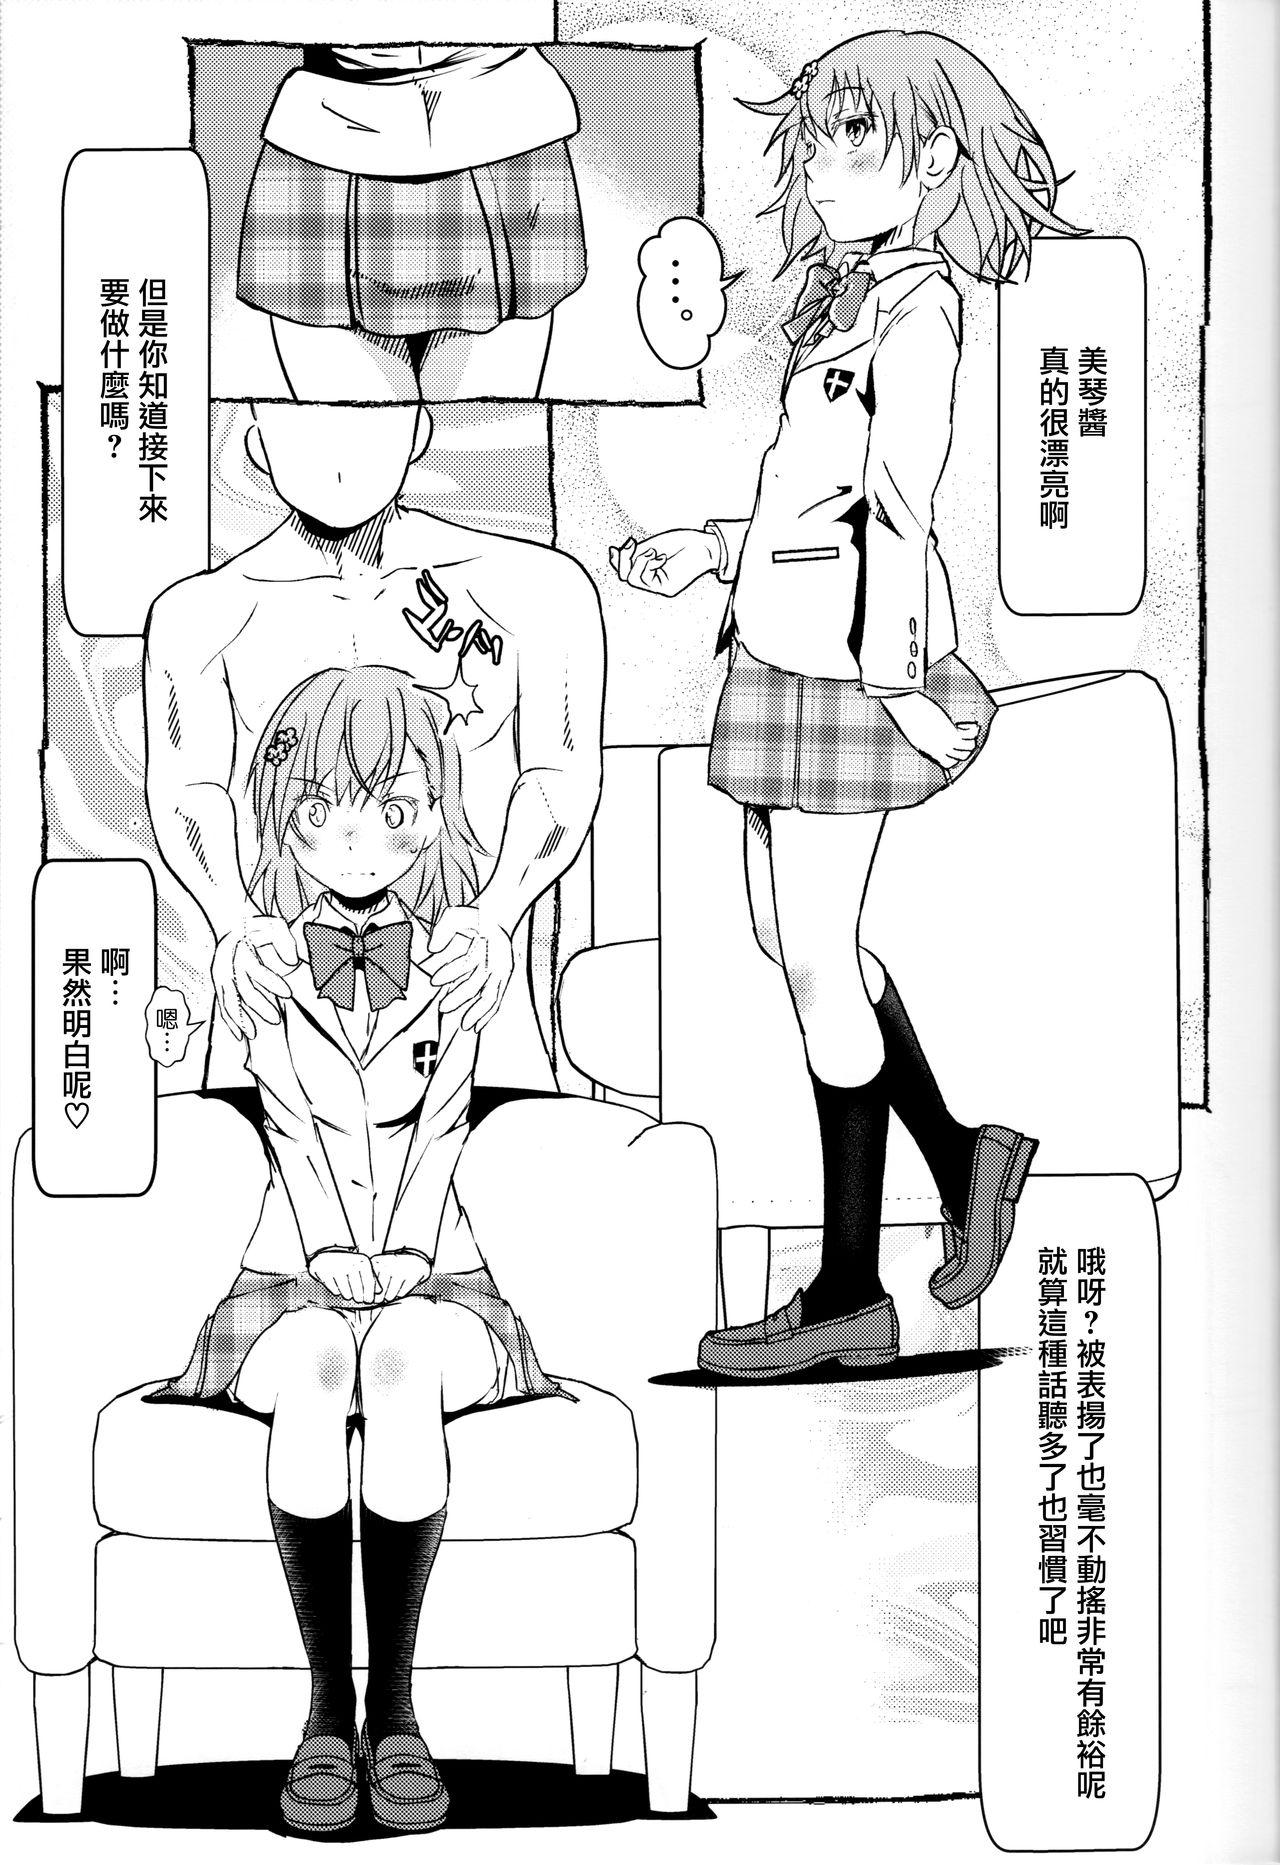 College Electric Girlland 1.0 - Toaru kagaku no railgun Action - Page 4